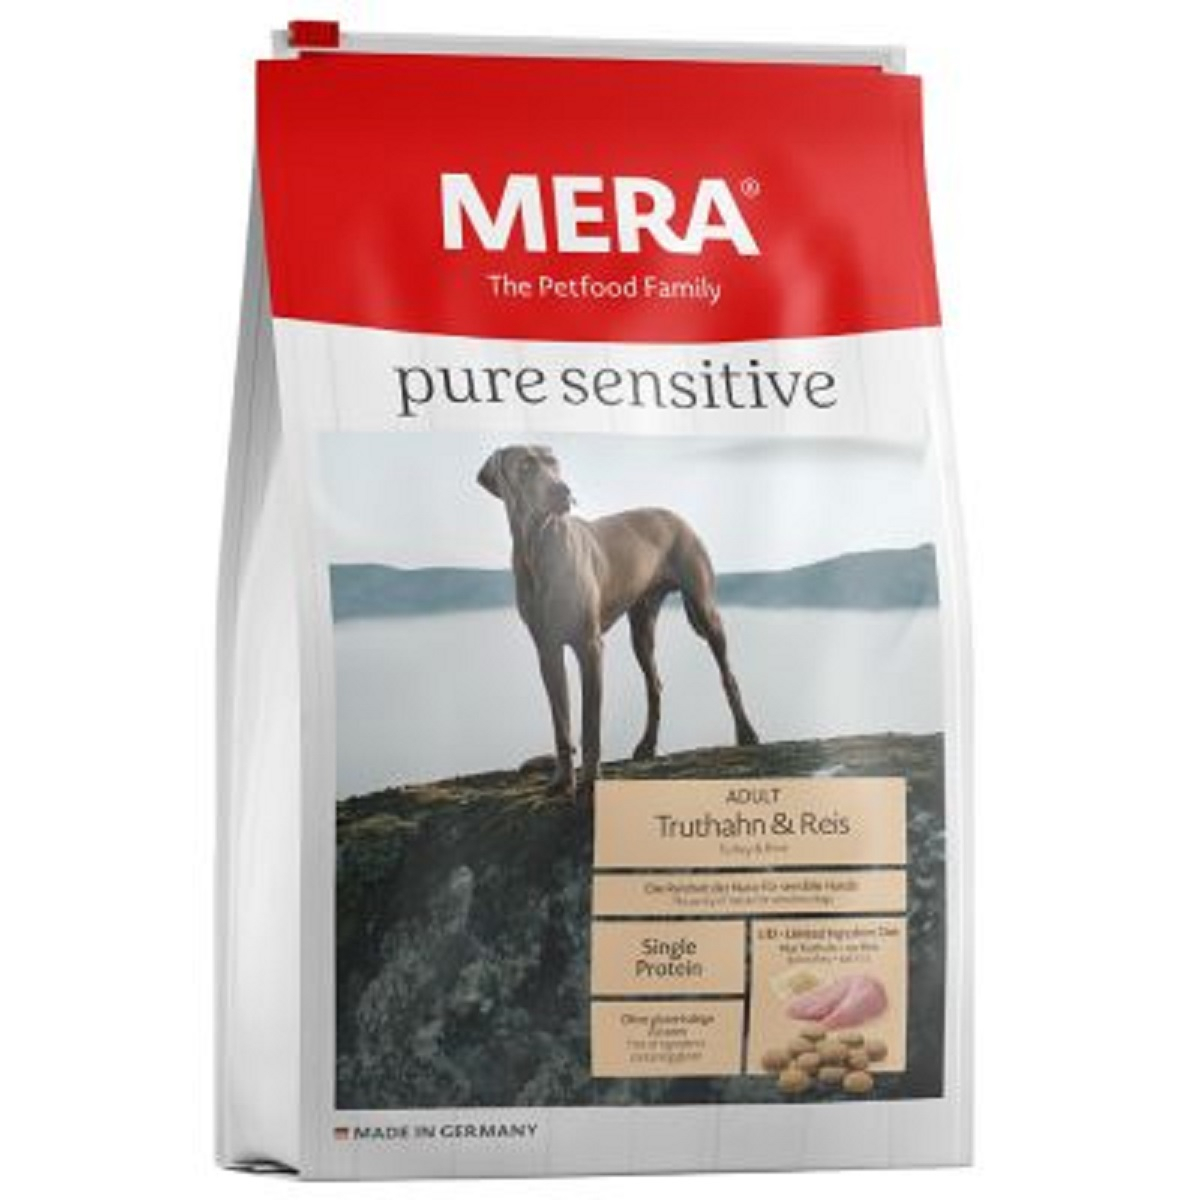 MERA Pure Sensitive, met kalkoen & rijst